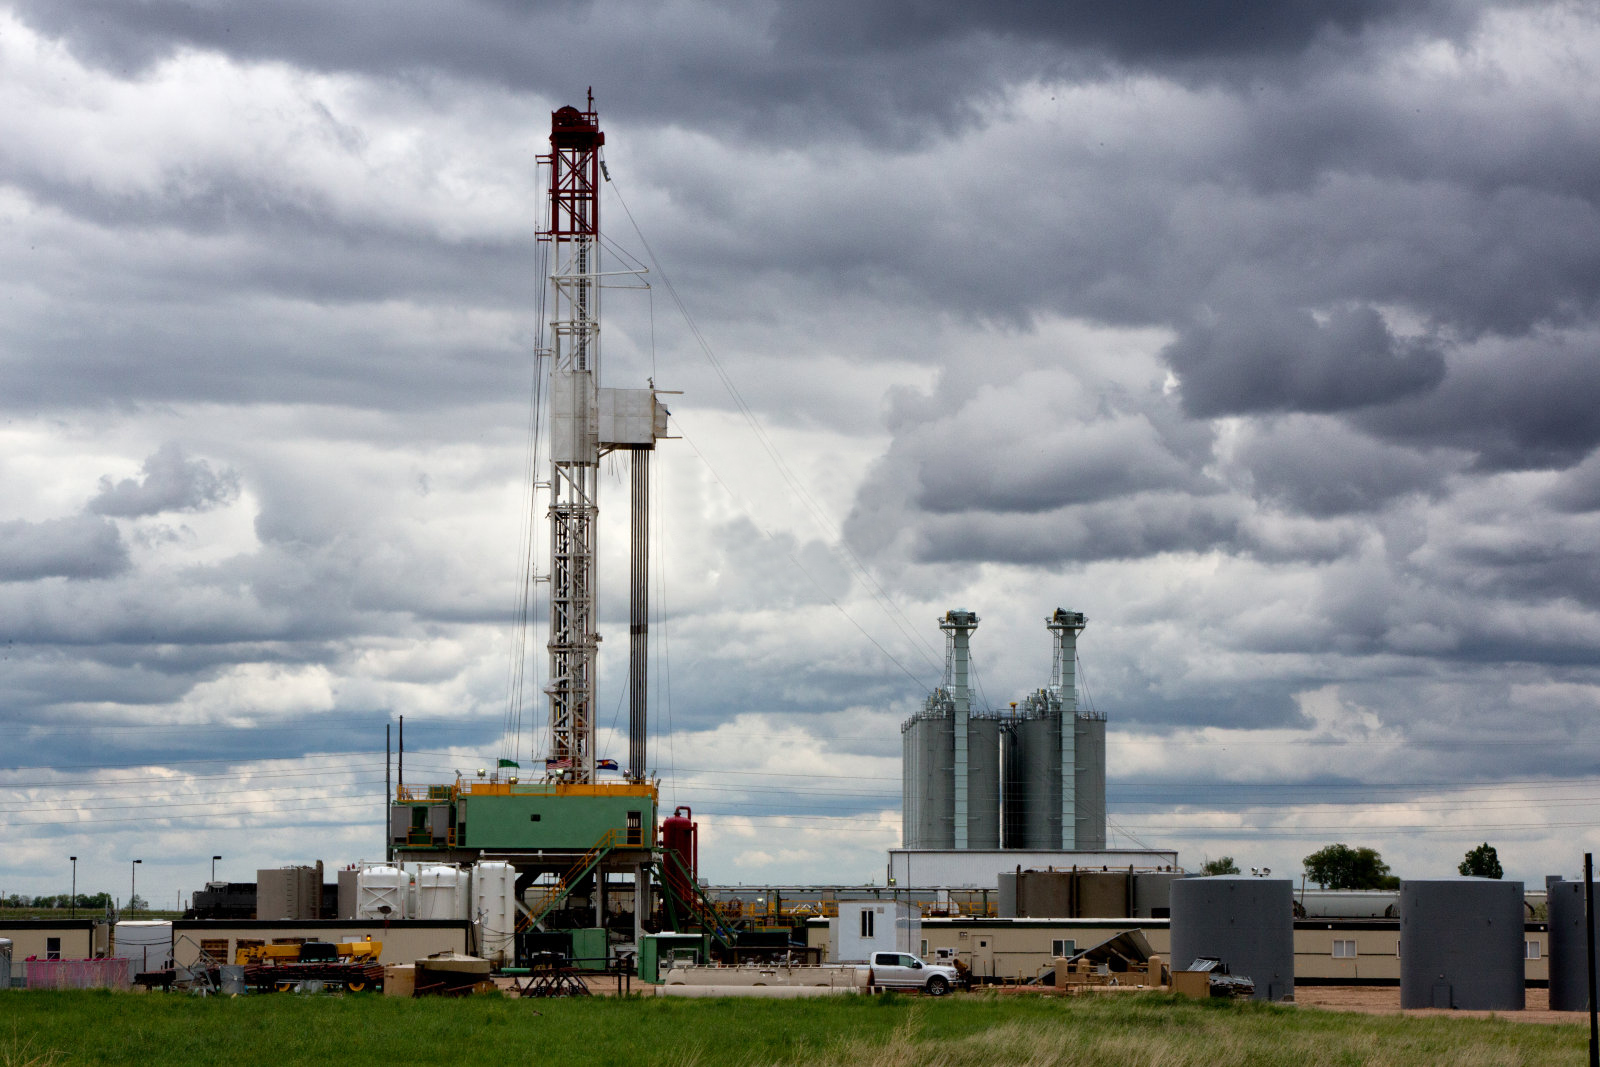 Rig pengeboran minyak fracking gedhe ing sangisore langit mendhung sing apik